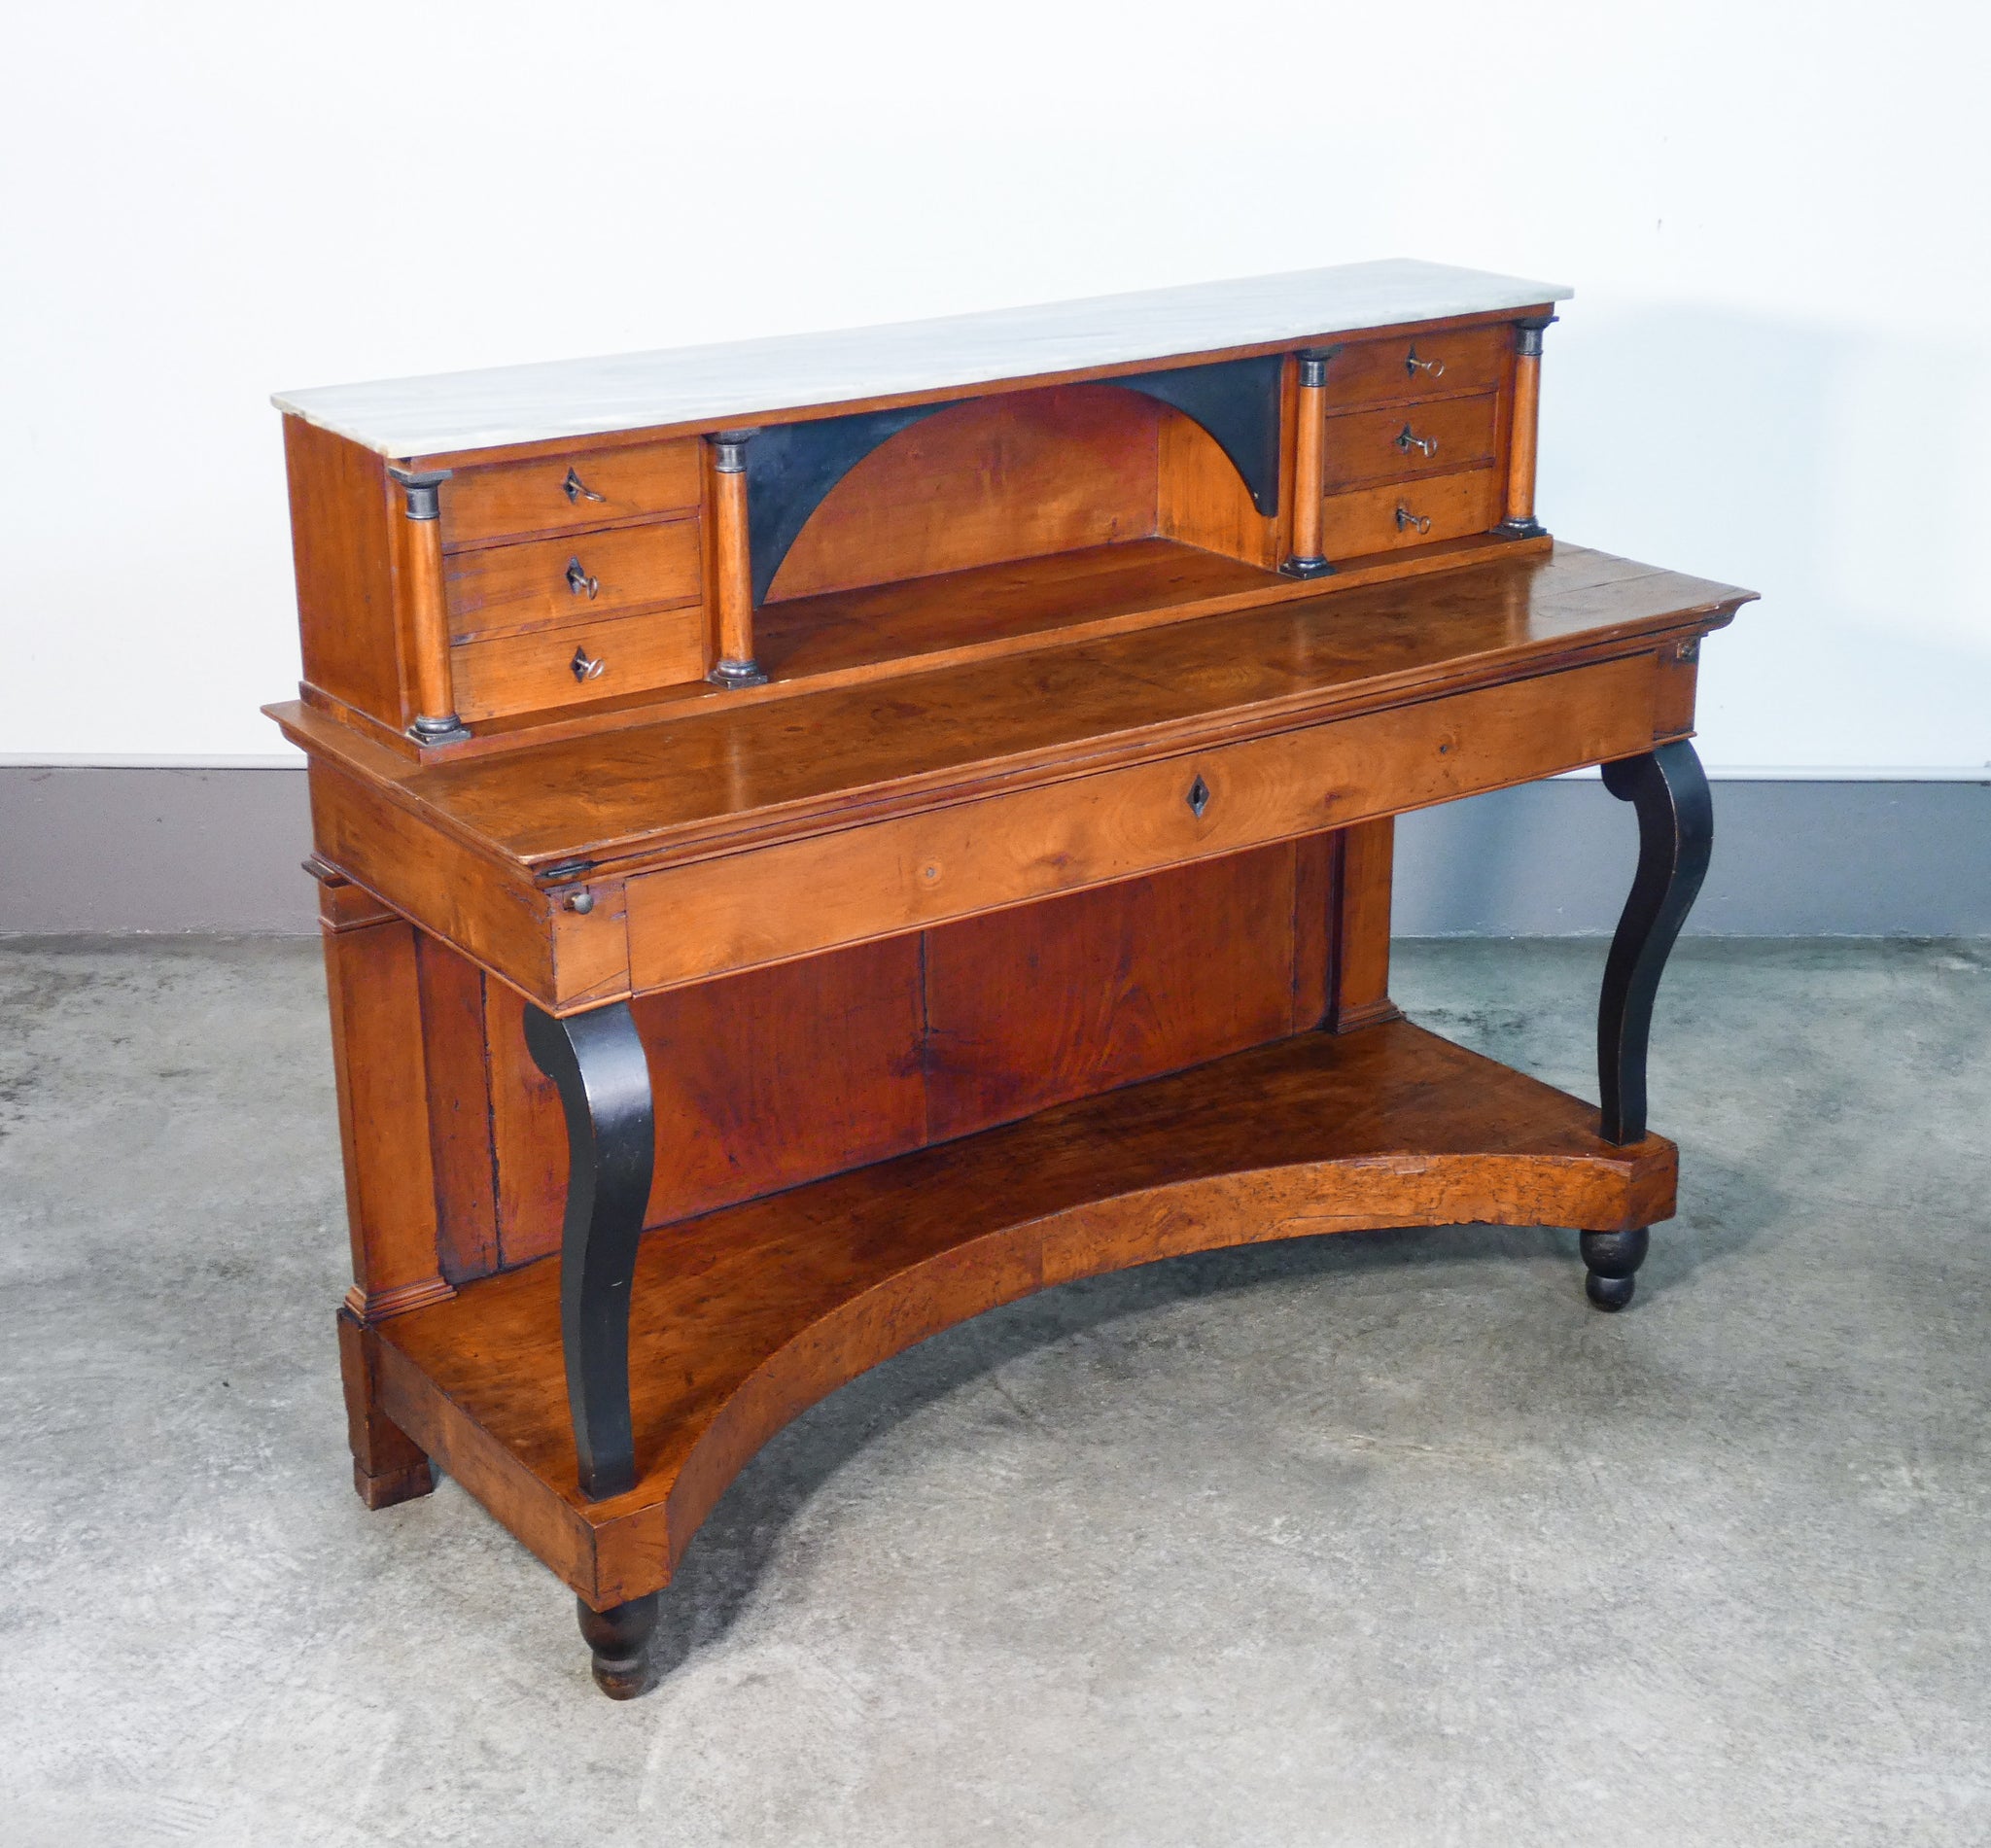 console scrittoio scrivania secretaire stipo impero legno noce epoca 1800 antica